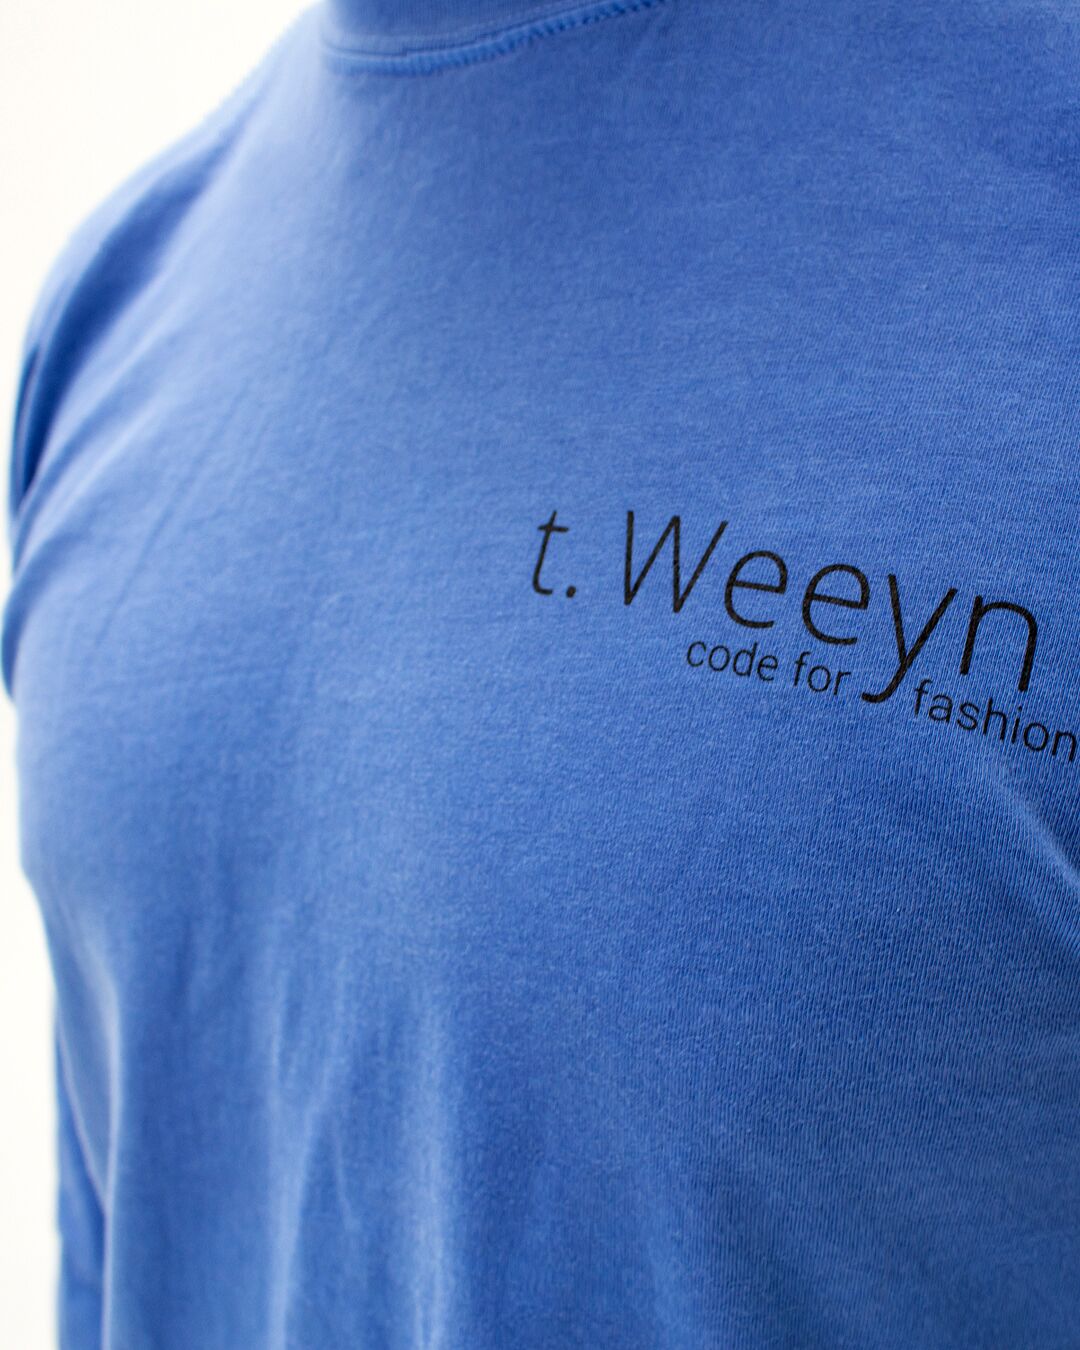 t. Weeyn Get Bent men's blue t shirt front view closeup